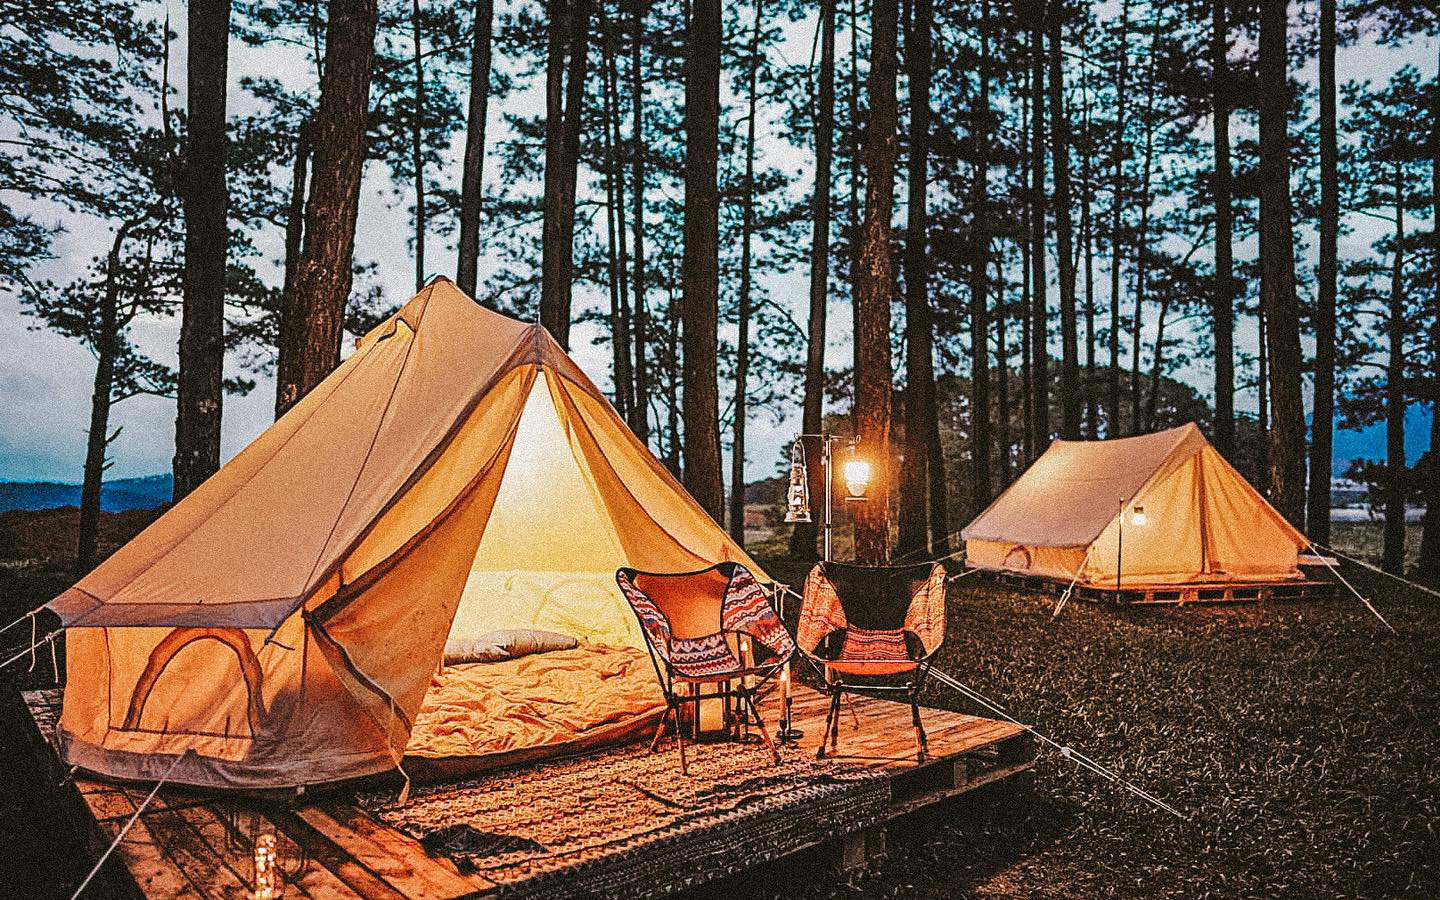 Tất tần tật về Glamping - mô hình cắm trại đang “hot” tại Việt Nam: Glamping là gì, khác gì Camping và cần lưu ý gì khi kinh doanh Glamping?